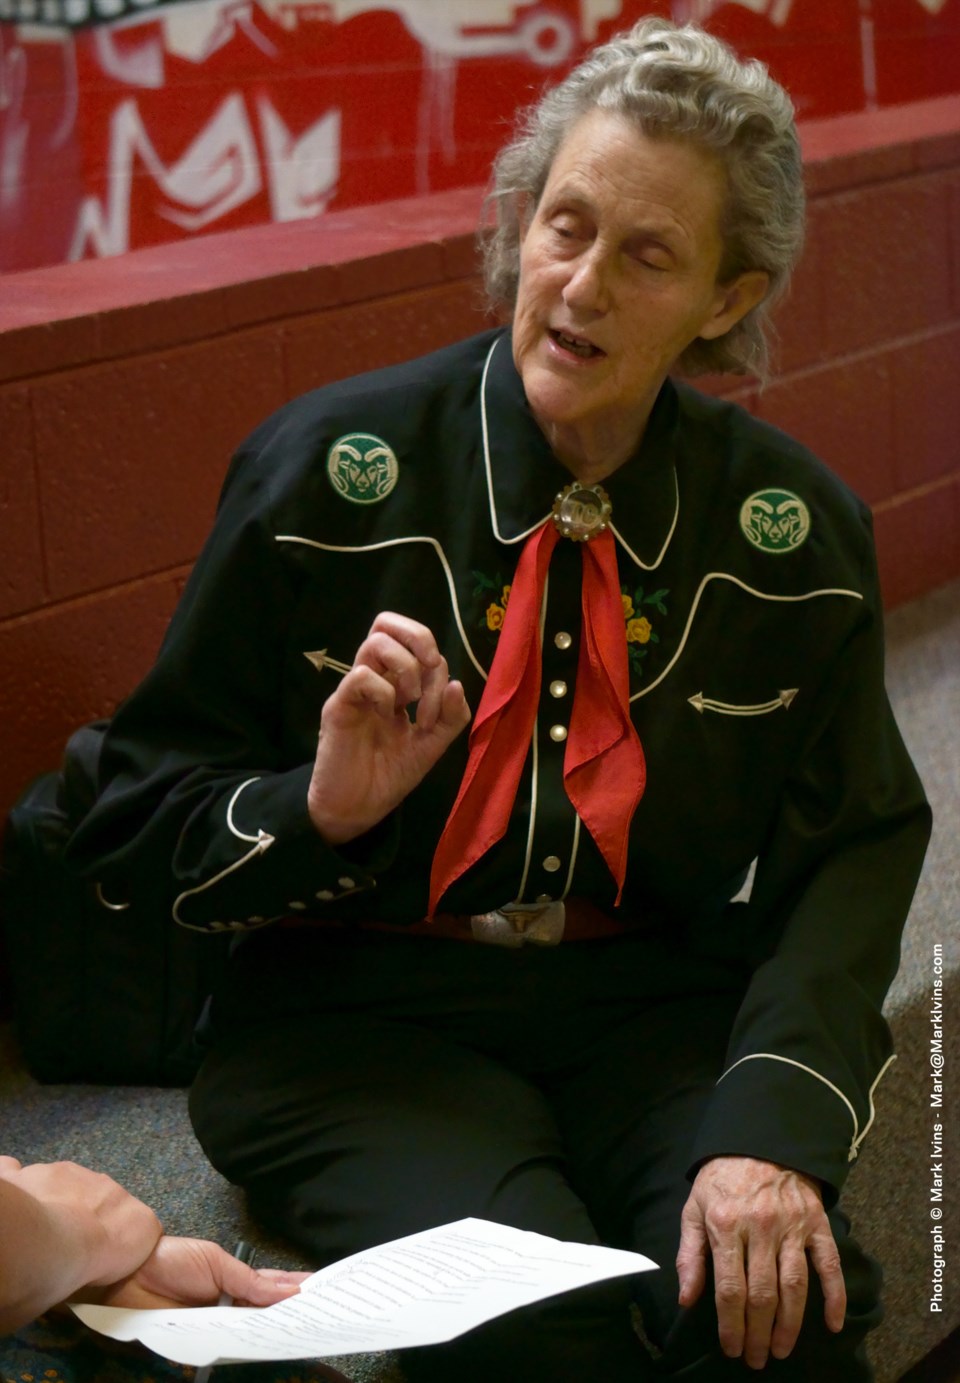 Dr Temple Grandin